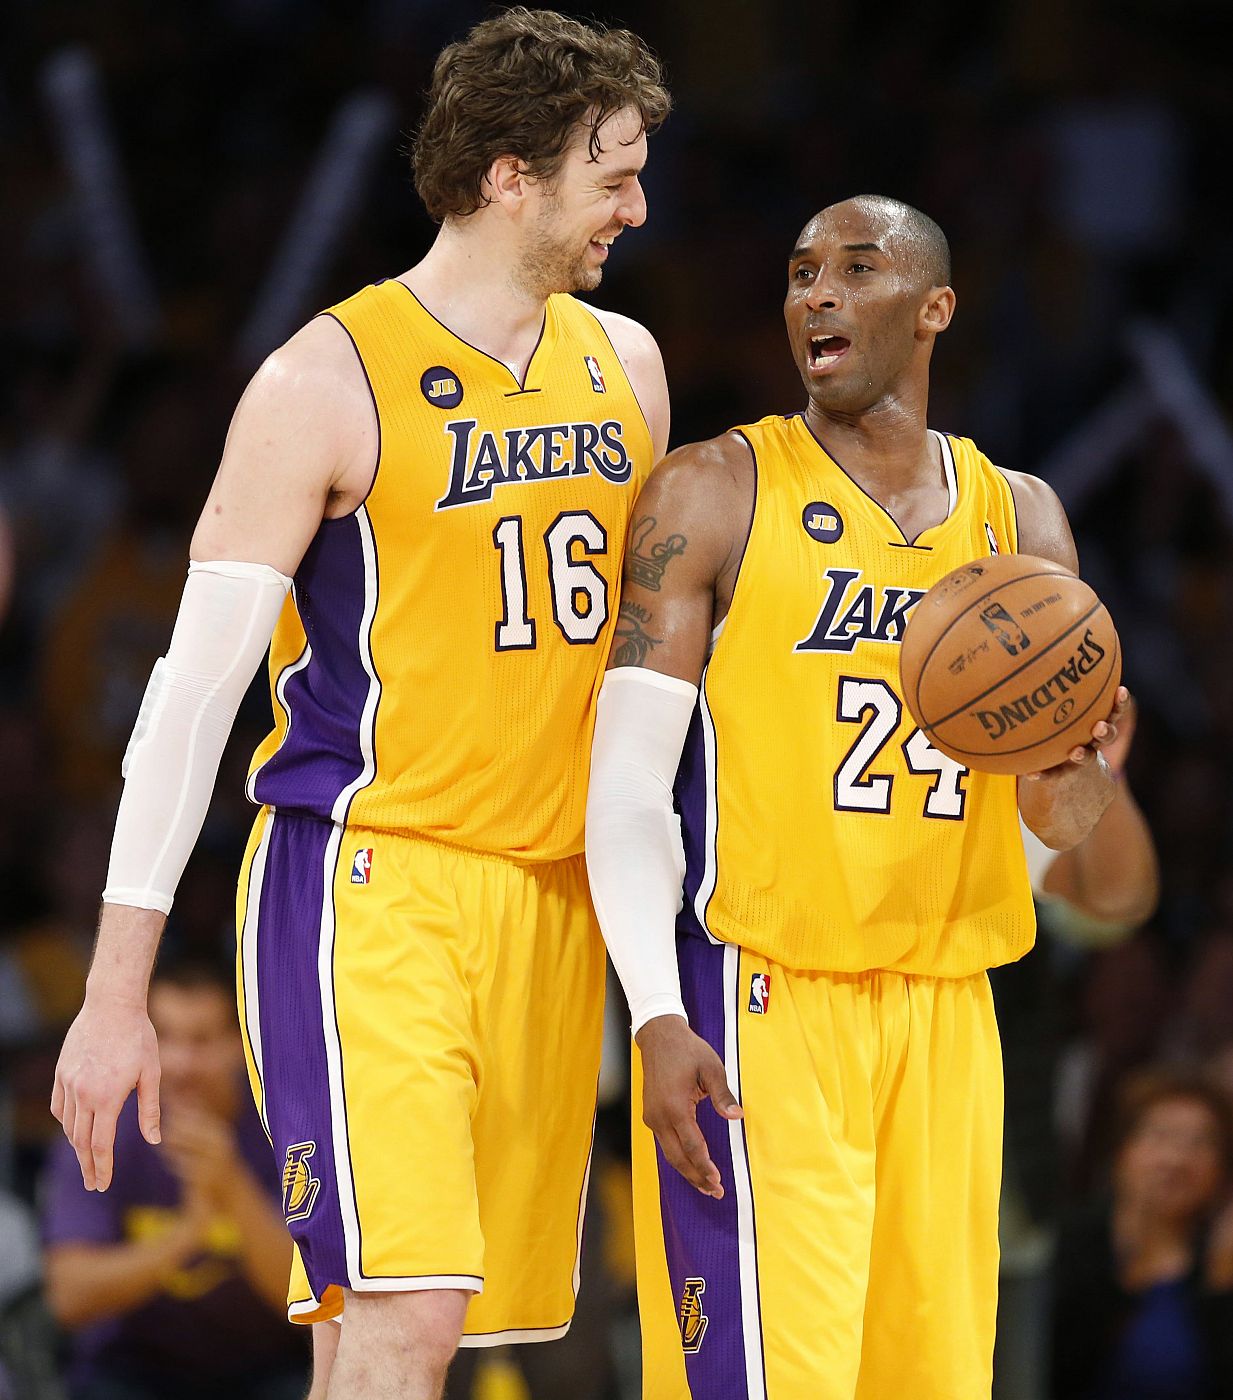 LPau Gasol (i) y Kobe Bryant, compañeros en los Ángeles Lakers, sonríen durante el partido